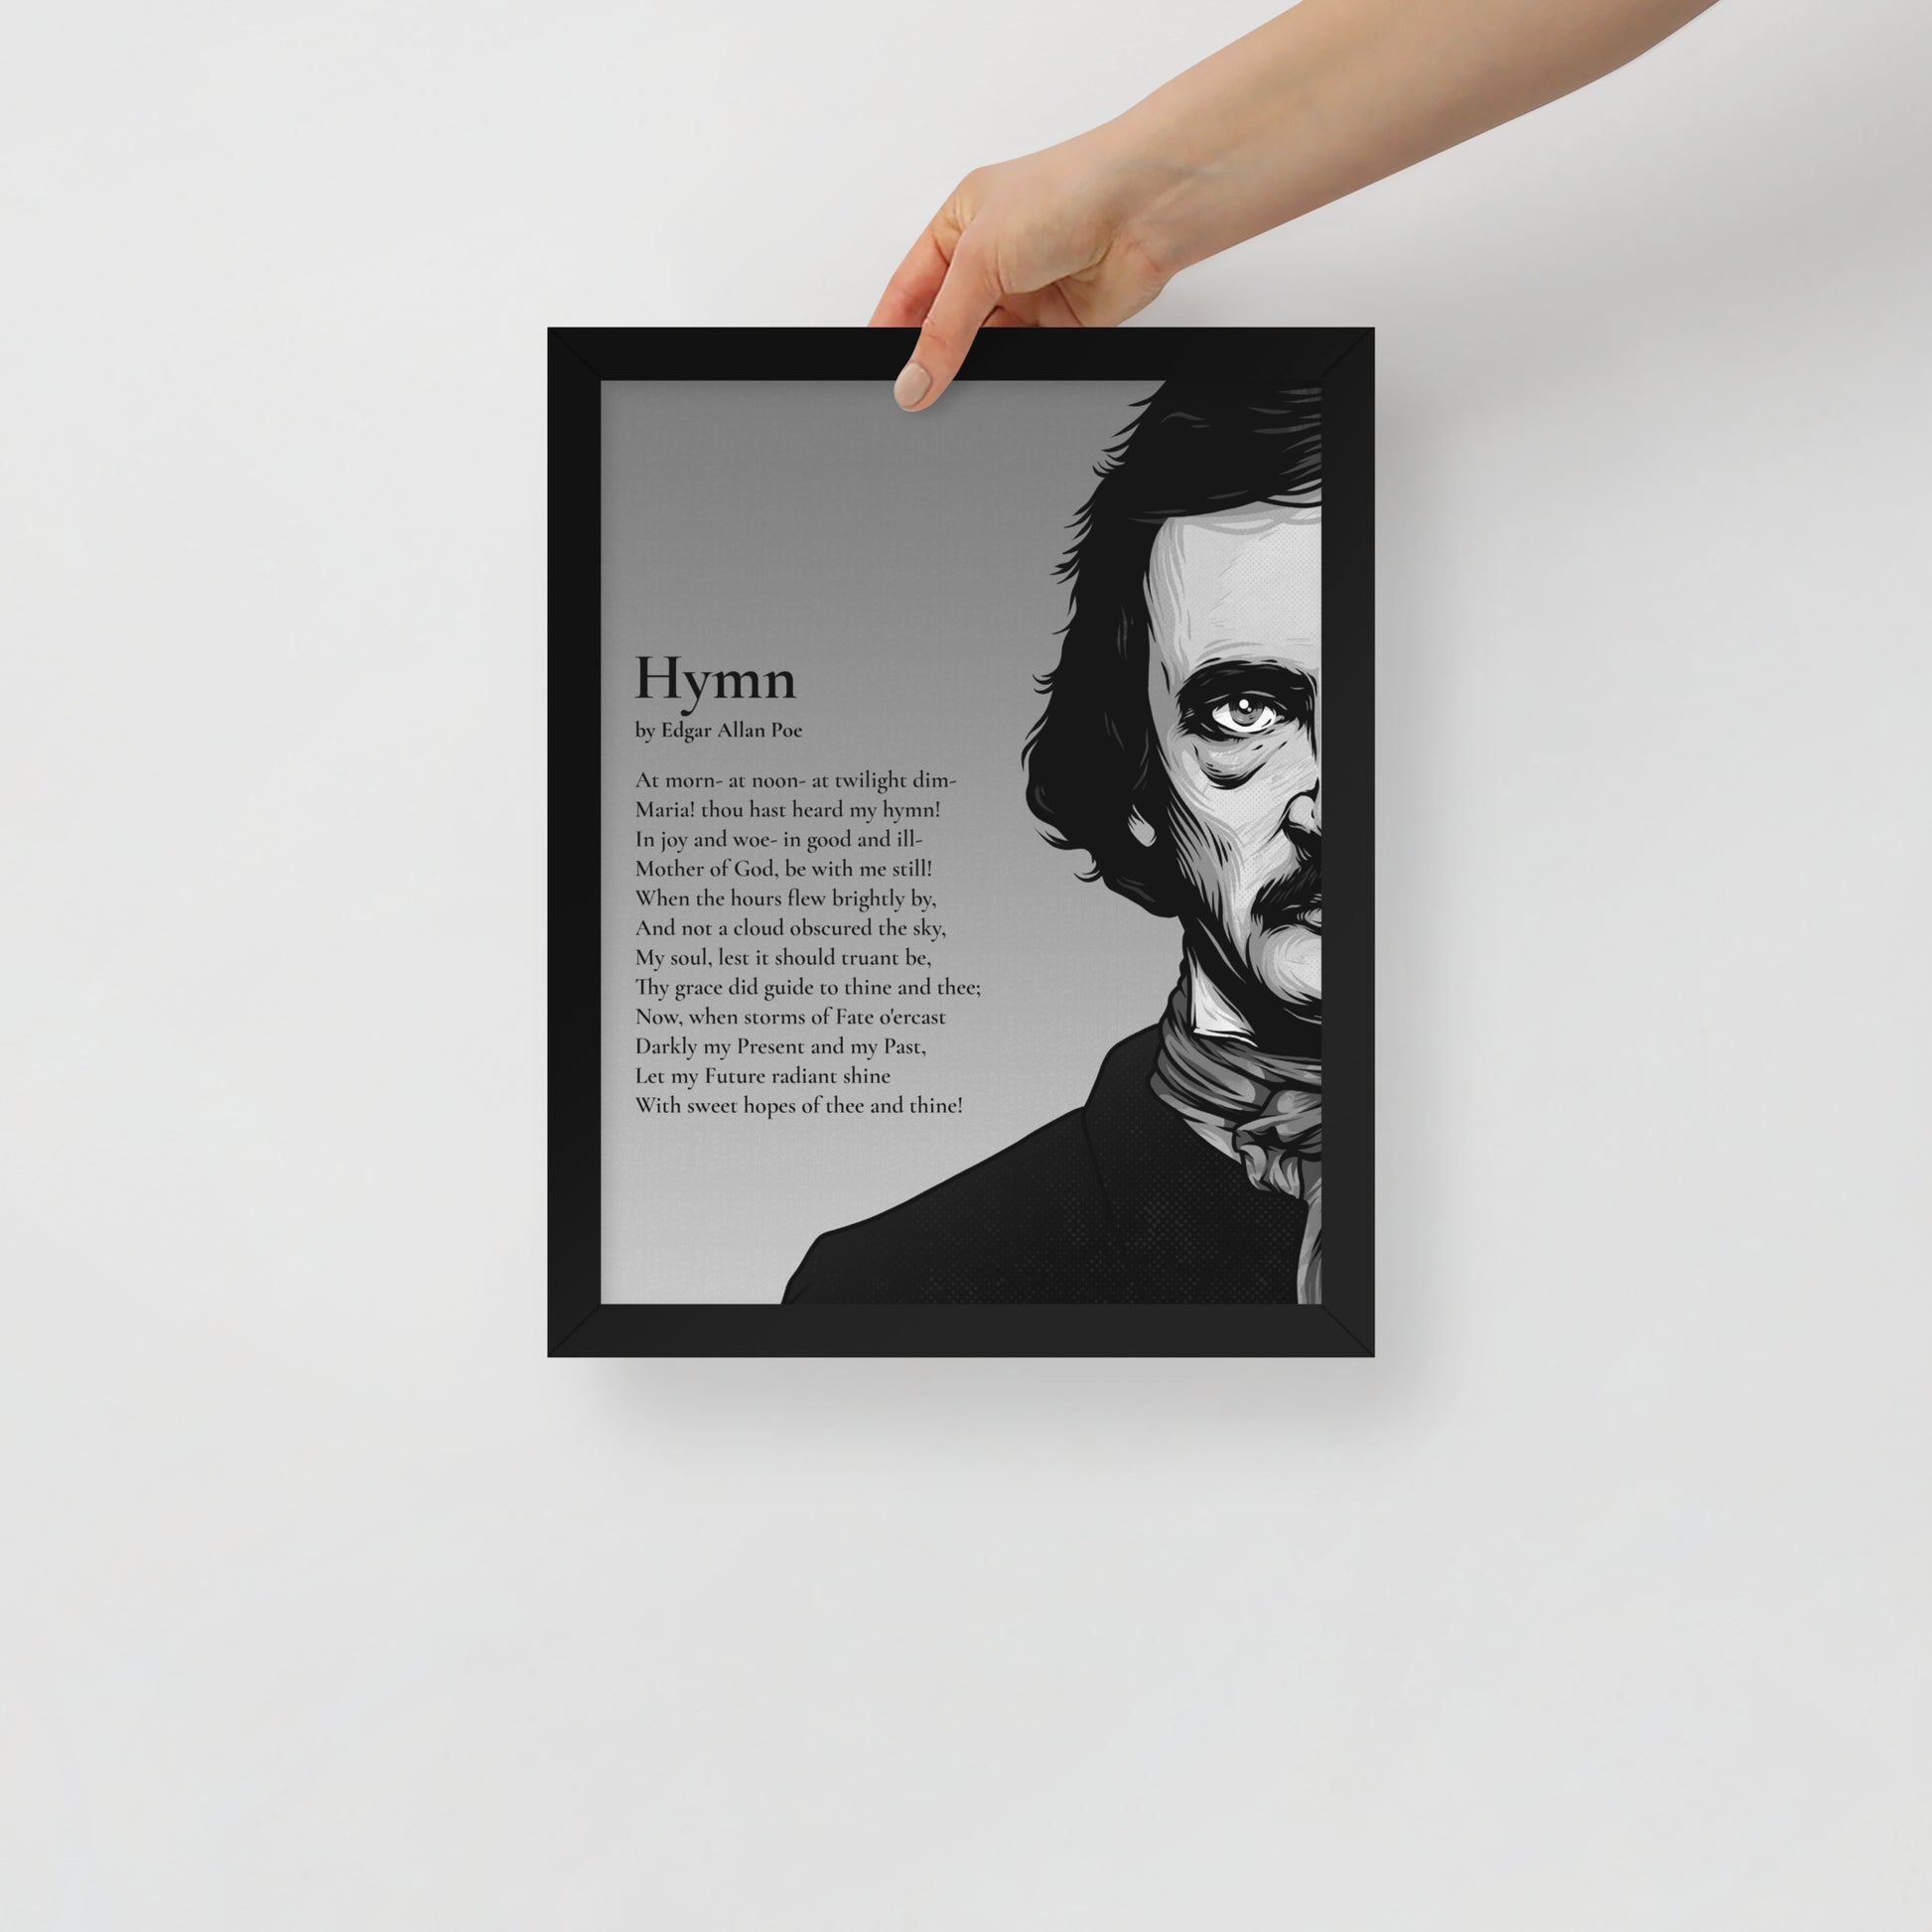 Edgar Allan Poe's 'Hymn' Framed Matted Poster - 11 x 14 Black Frame